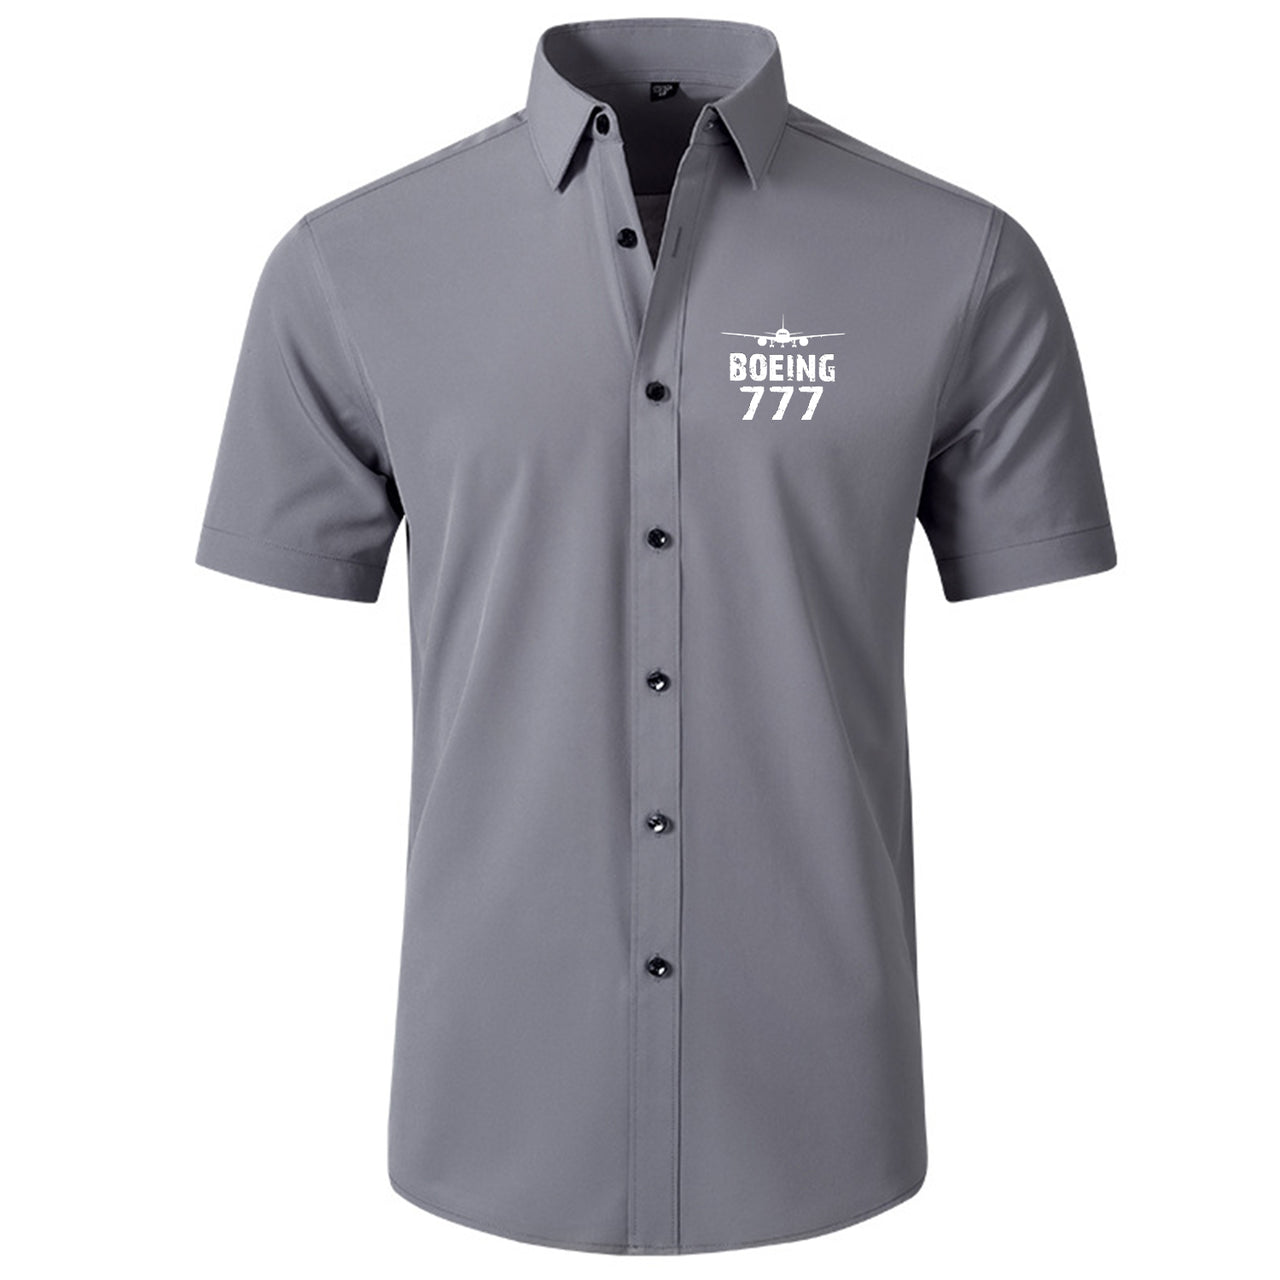 Boeing 777 & Plane Designed Short Sleeve Shirts